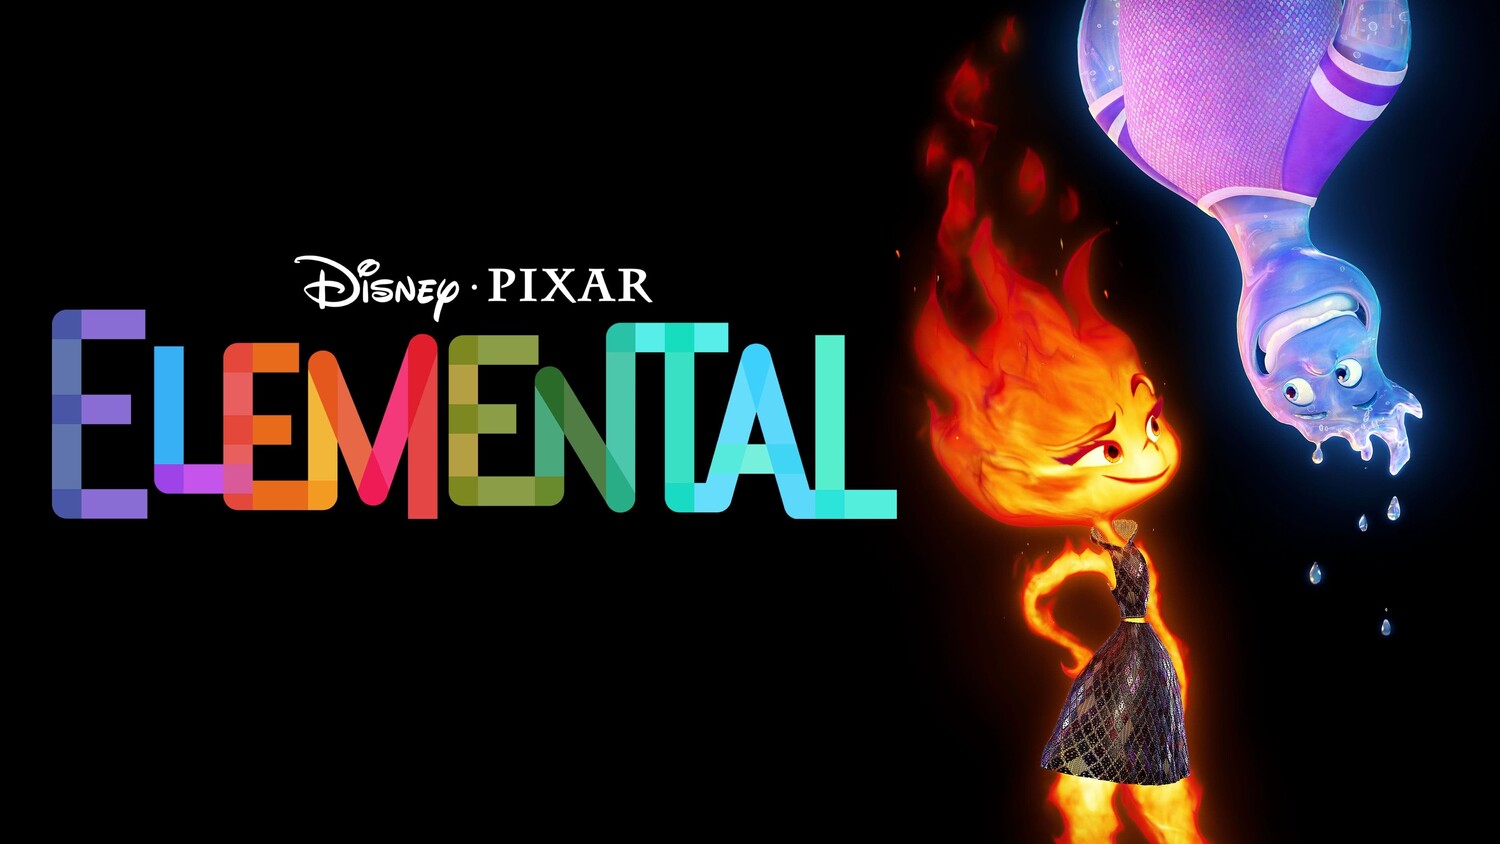 Elemental watch. Pixar Элементаль. Pixar огонь и вода. Огонь и вода мудтк.